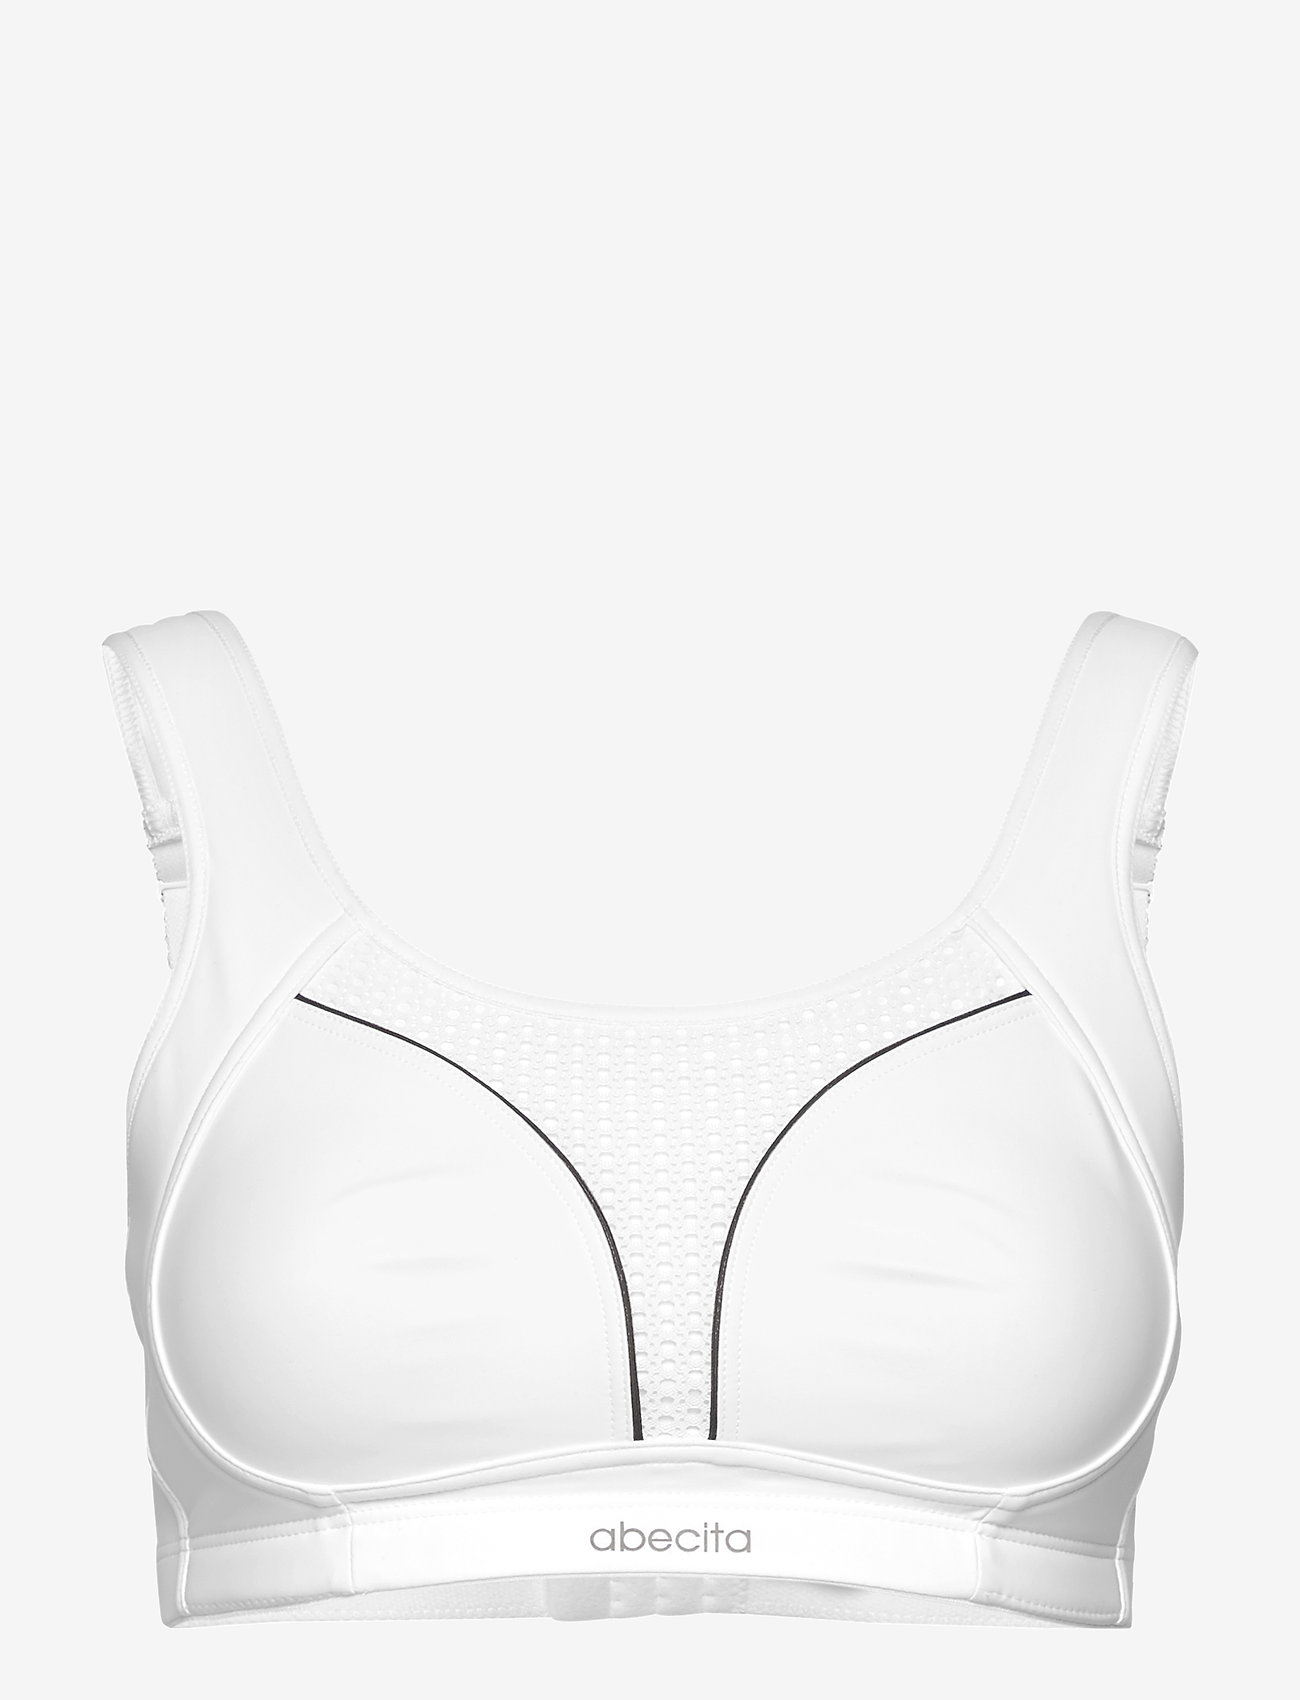 Abecita - Dynamic Sports bra - sport bras: high support - white/grey - 0